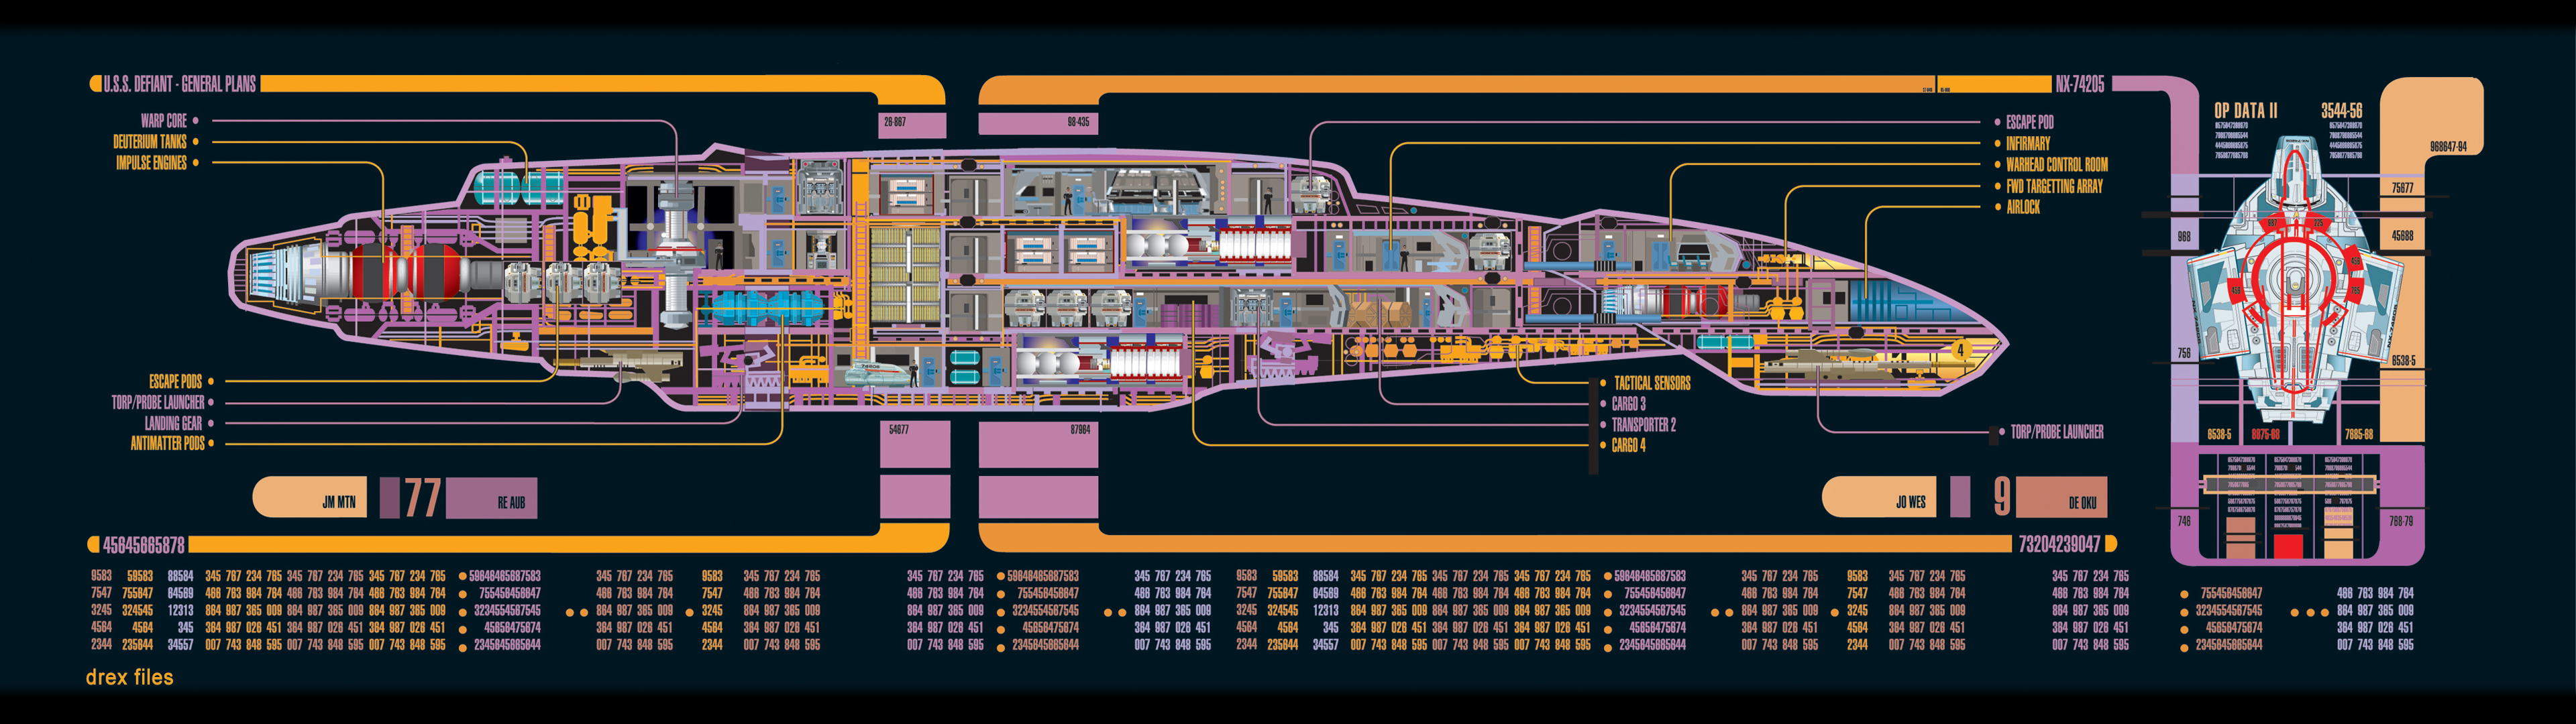 Star Trek Computer Wallpapers, Desktop Backgrounds | 3840x1080 ...